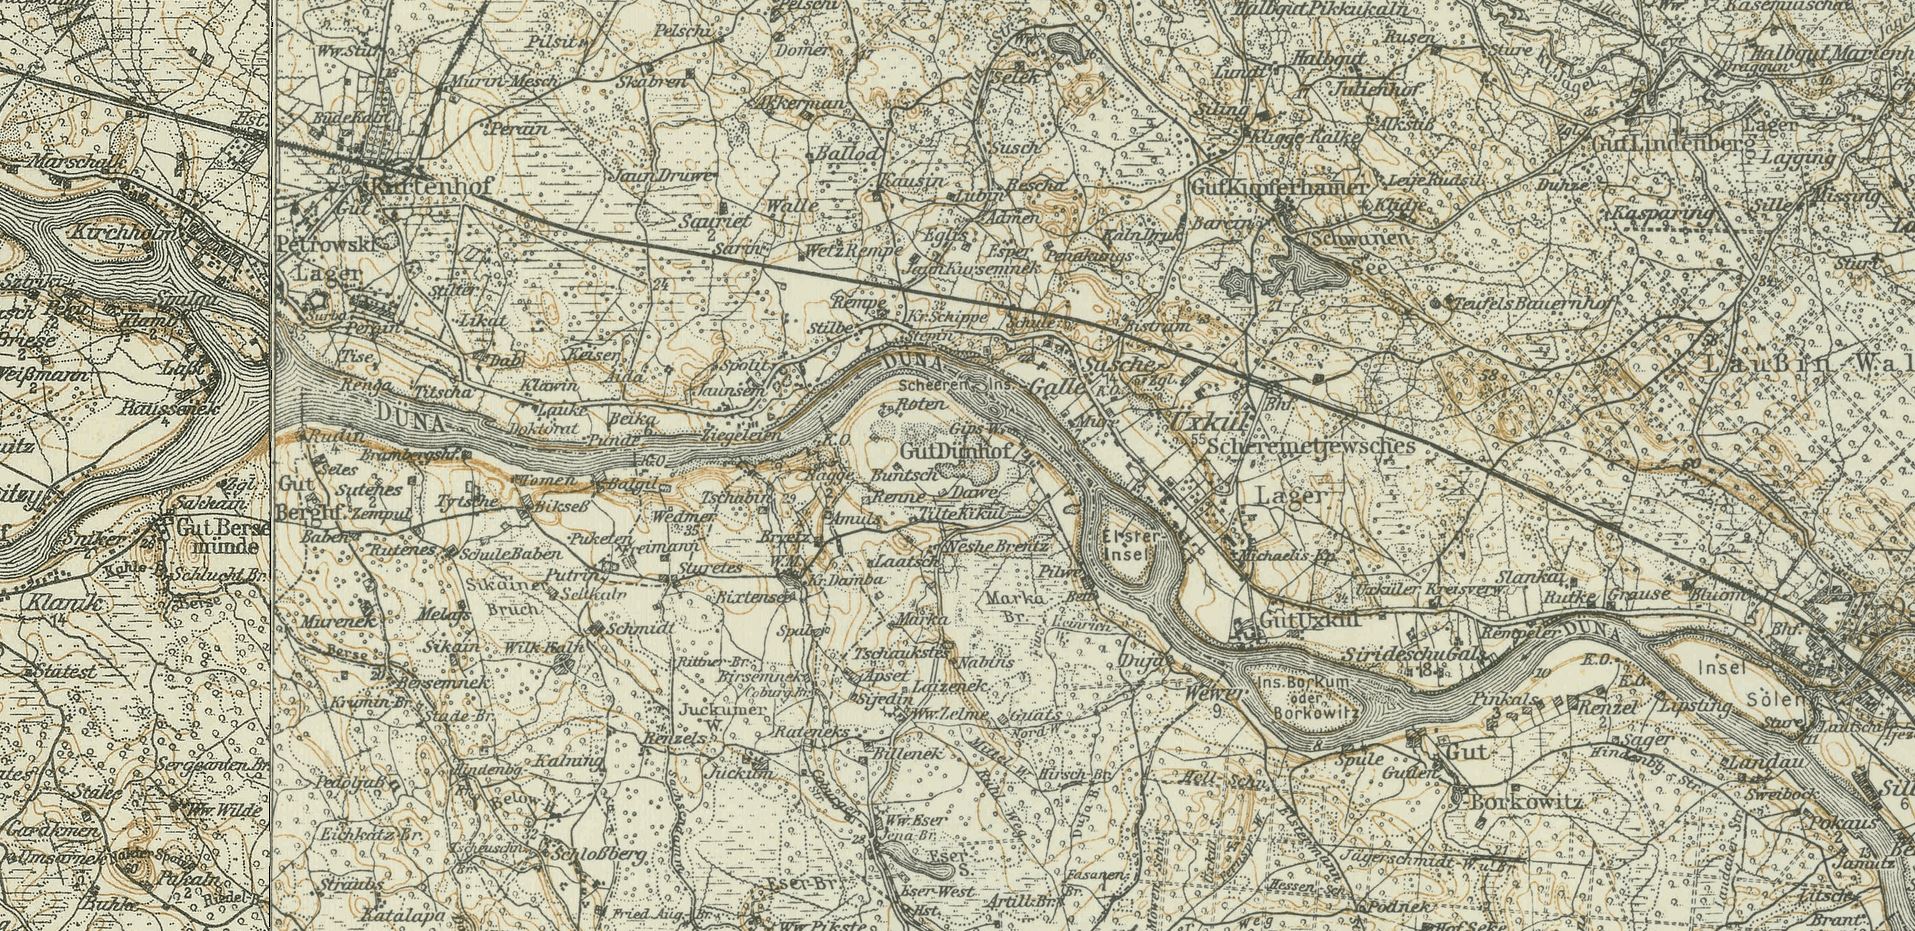 Karte uexkull 1914-1919